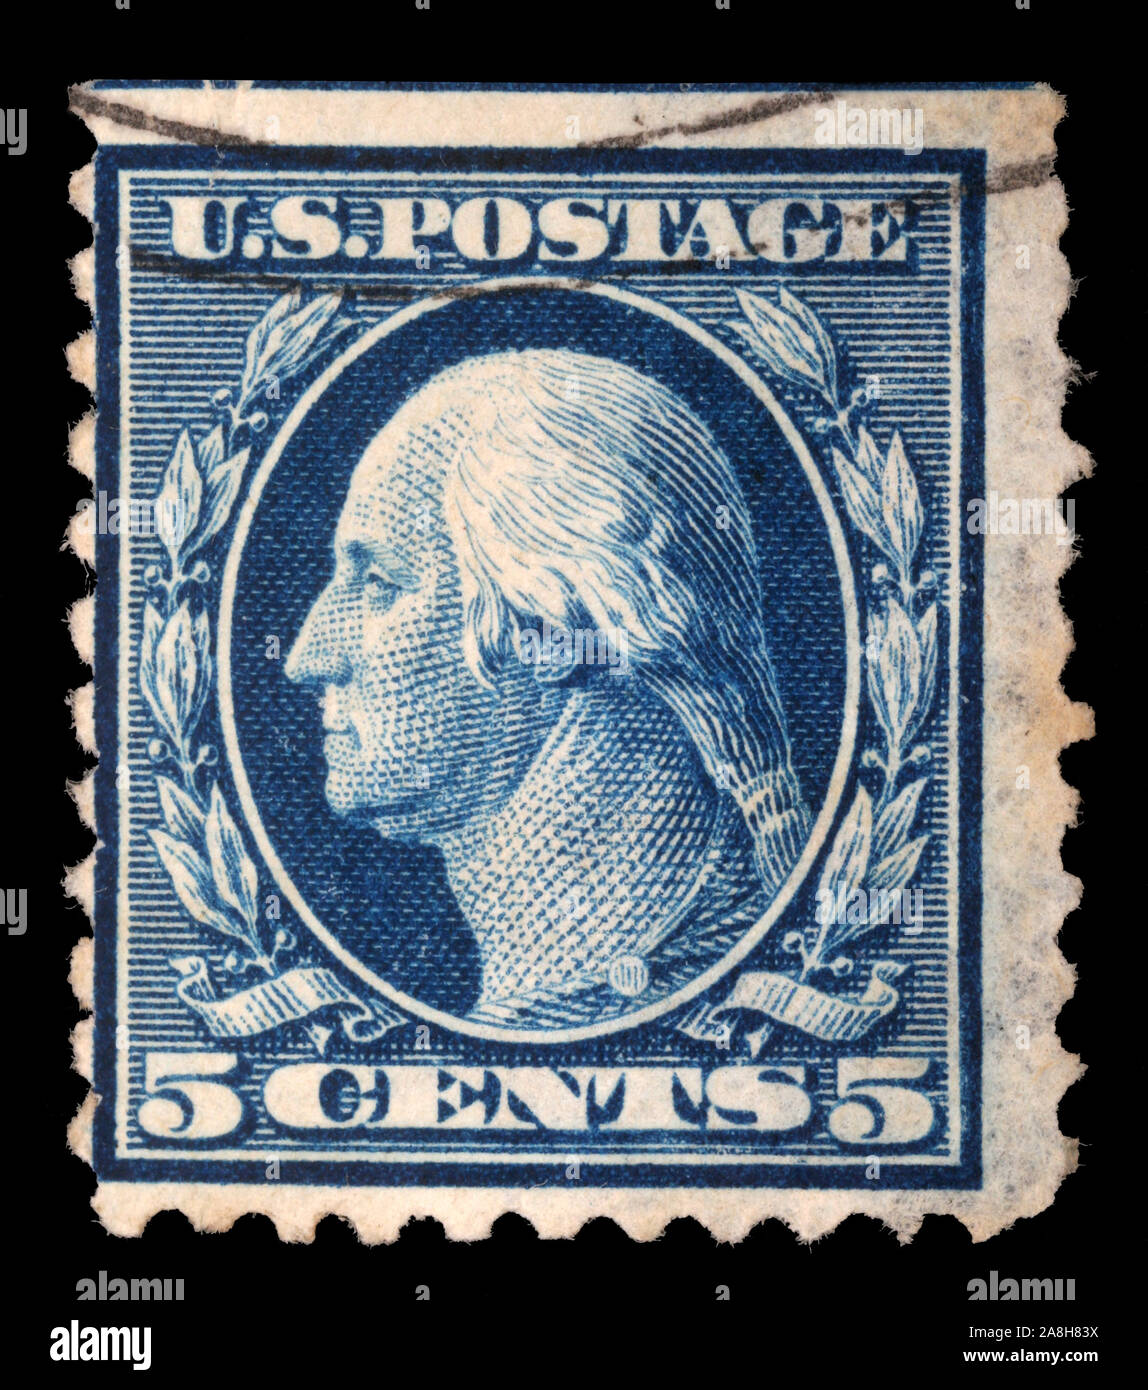 Stempel Gedruckt in den USA, zeigt George Washington, erster Präsident der USA 1789-1797, ca. 1911 Stockfoto